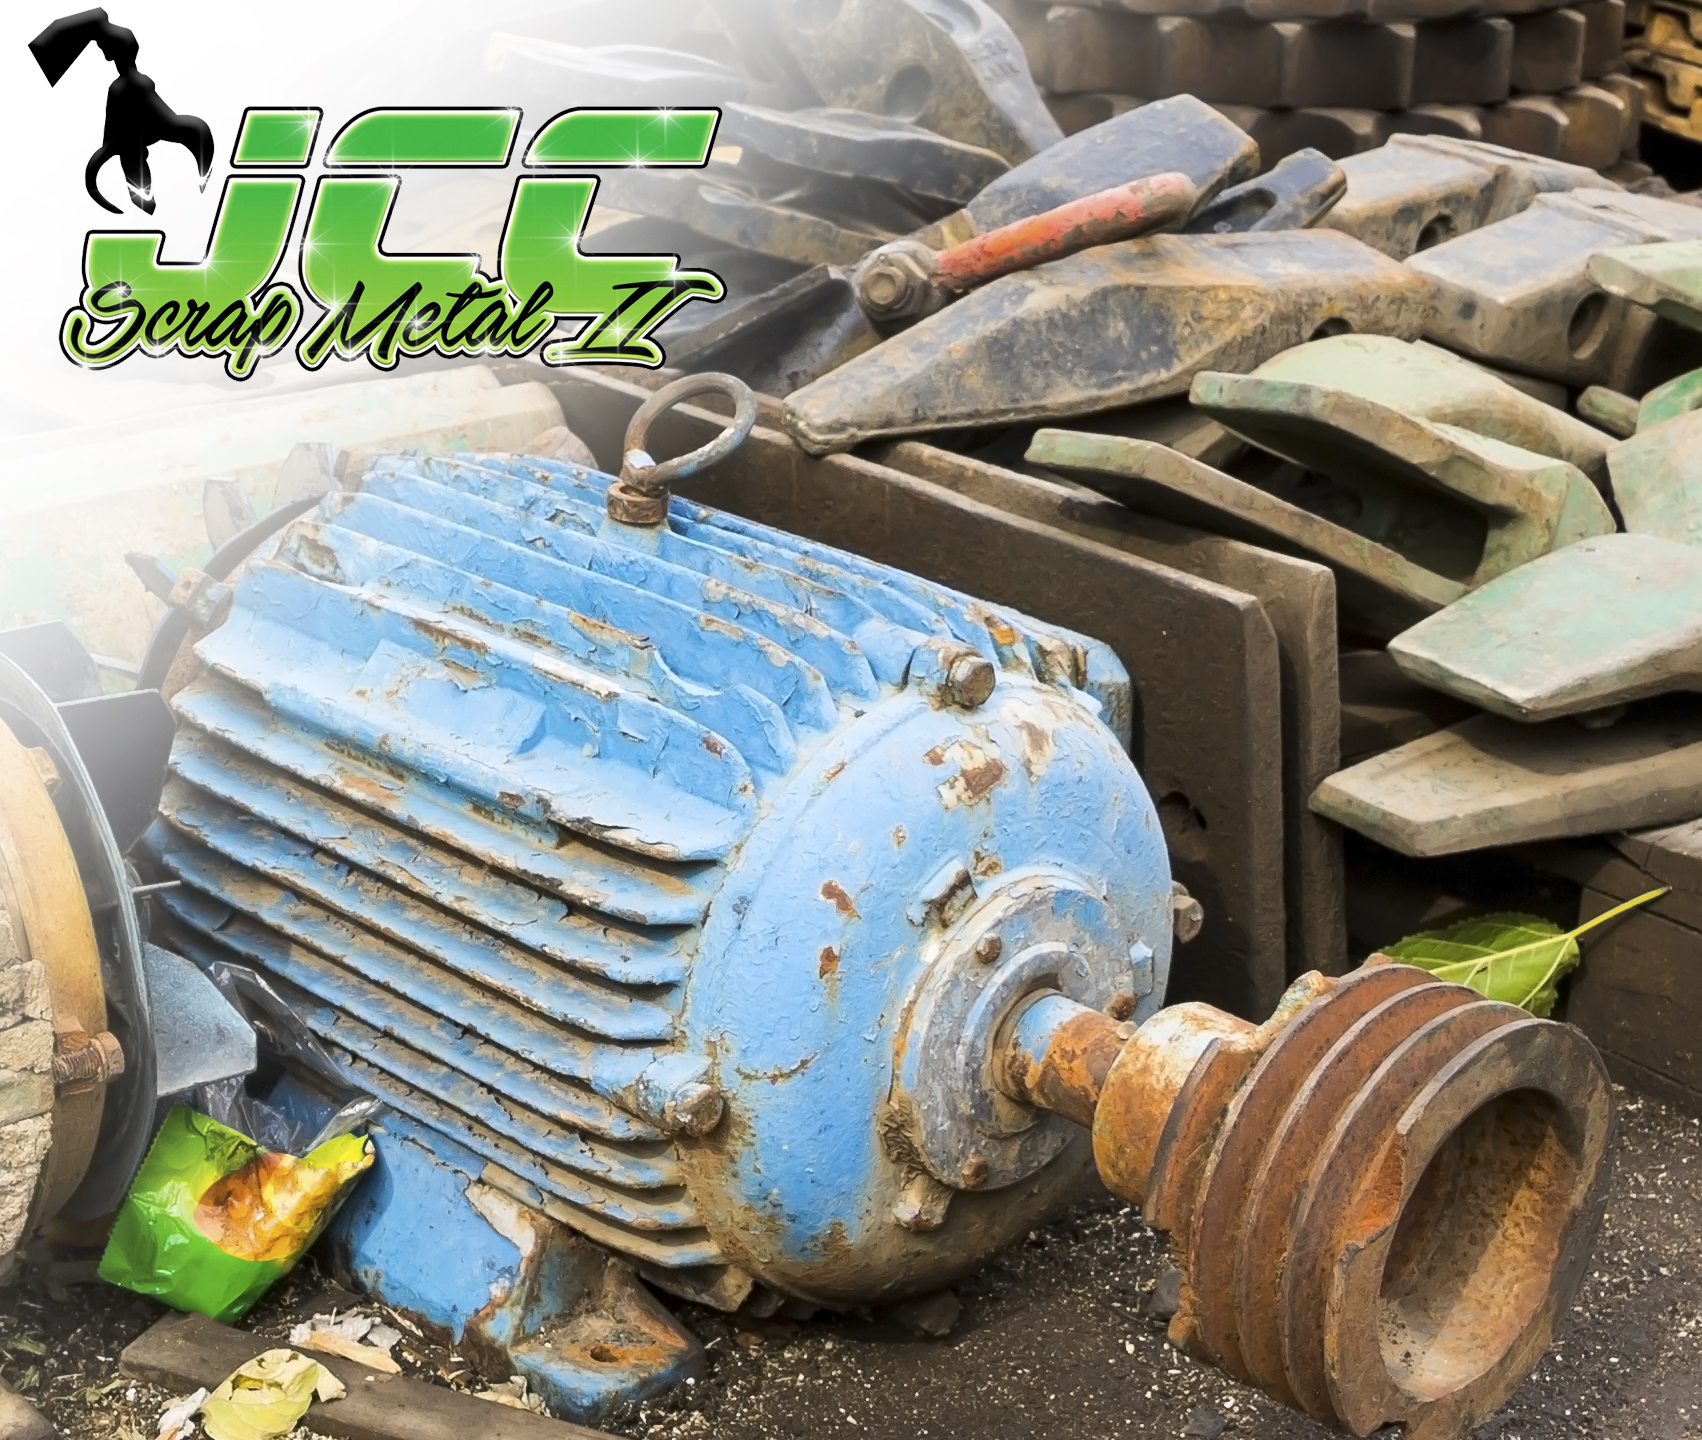 JCC Scrap Metal II, Professional Scrap Metal Recycling Services - Electrical Motors Junk Metal | 197 Bangor Street, Lindenhurst, NY 11757 | 631-816-2000, jccscrapmetal2@gmail.com - Electrical Motors Junk Metal Image